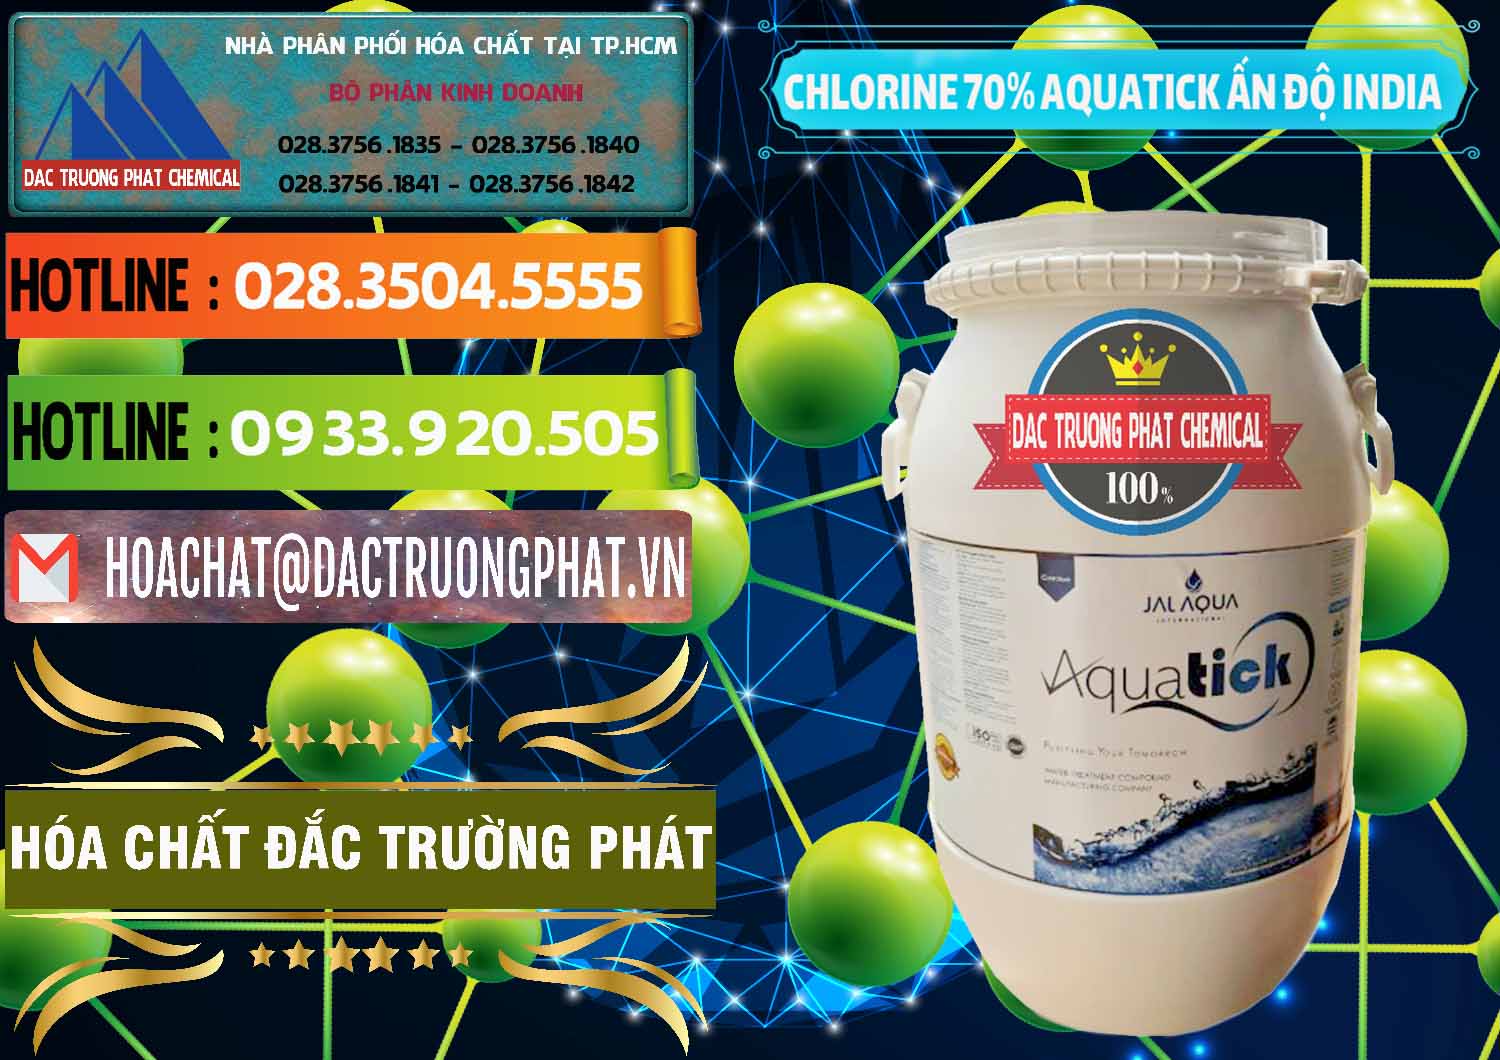 Chuyên bán - cung cấp Chlorine – Clorin 70% Aquatick Jal Aqua Ấn Độ India - 0215 - Chuyên kinh doanh - phân phối hóa chất tại TP.HCM - cungcaphoachat.com.vn